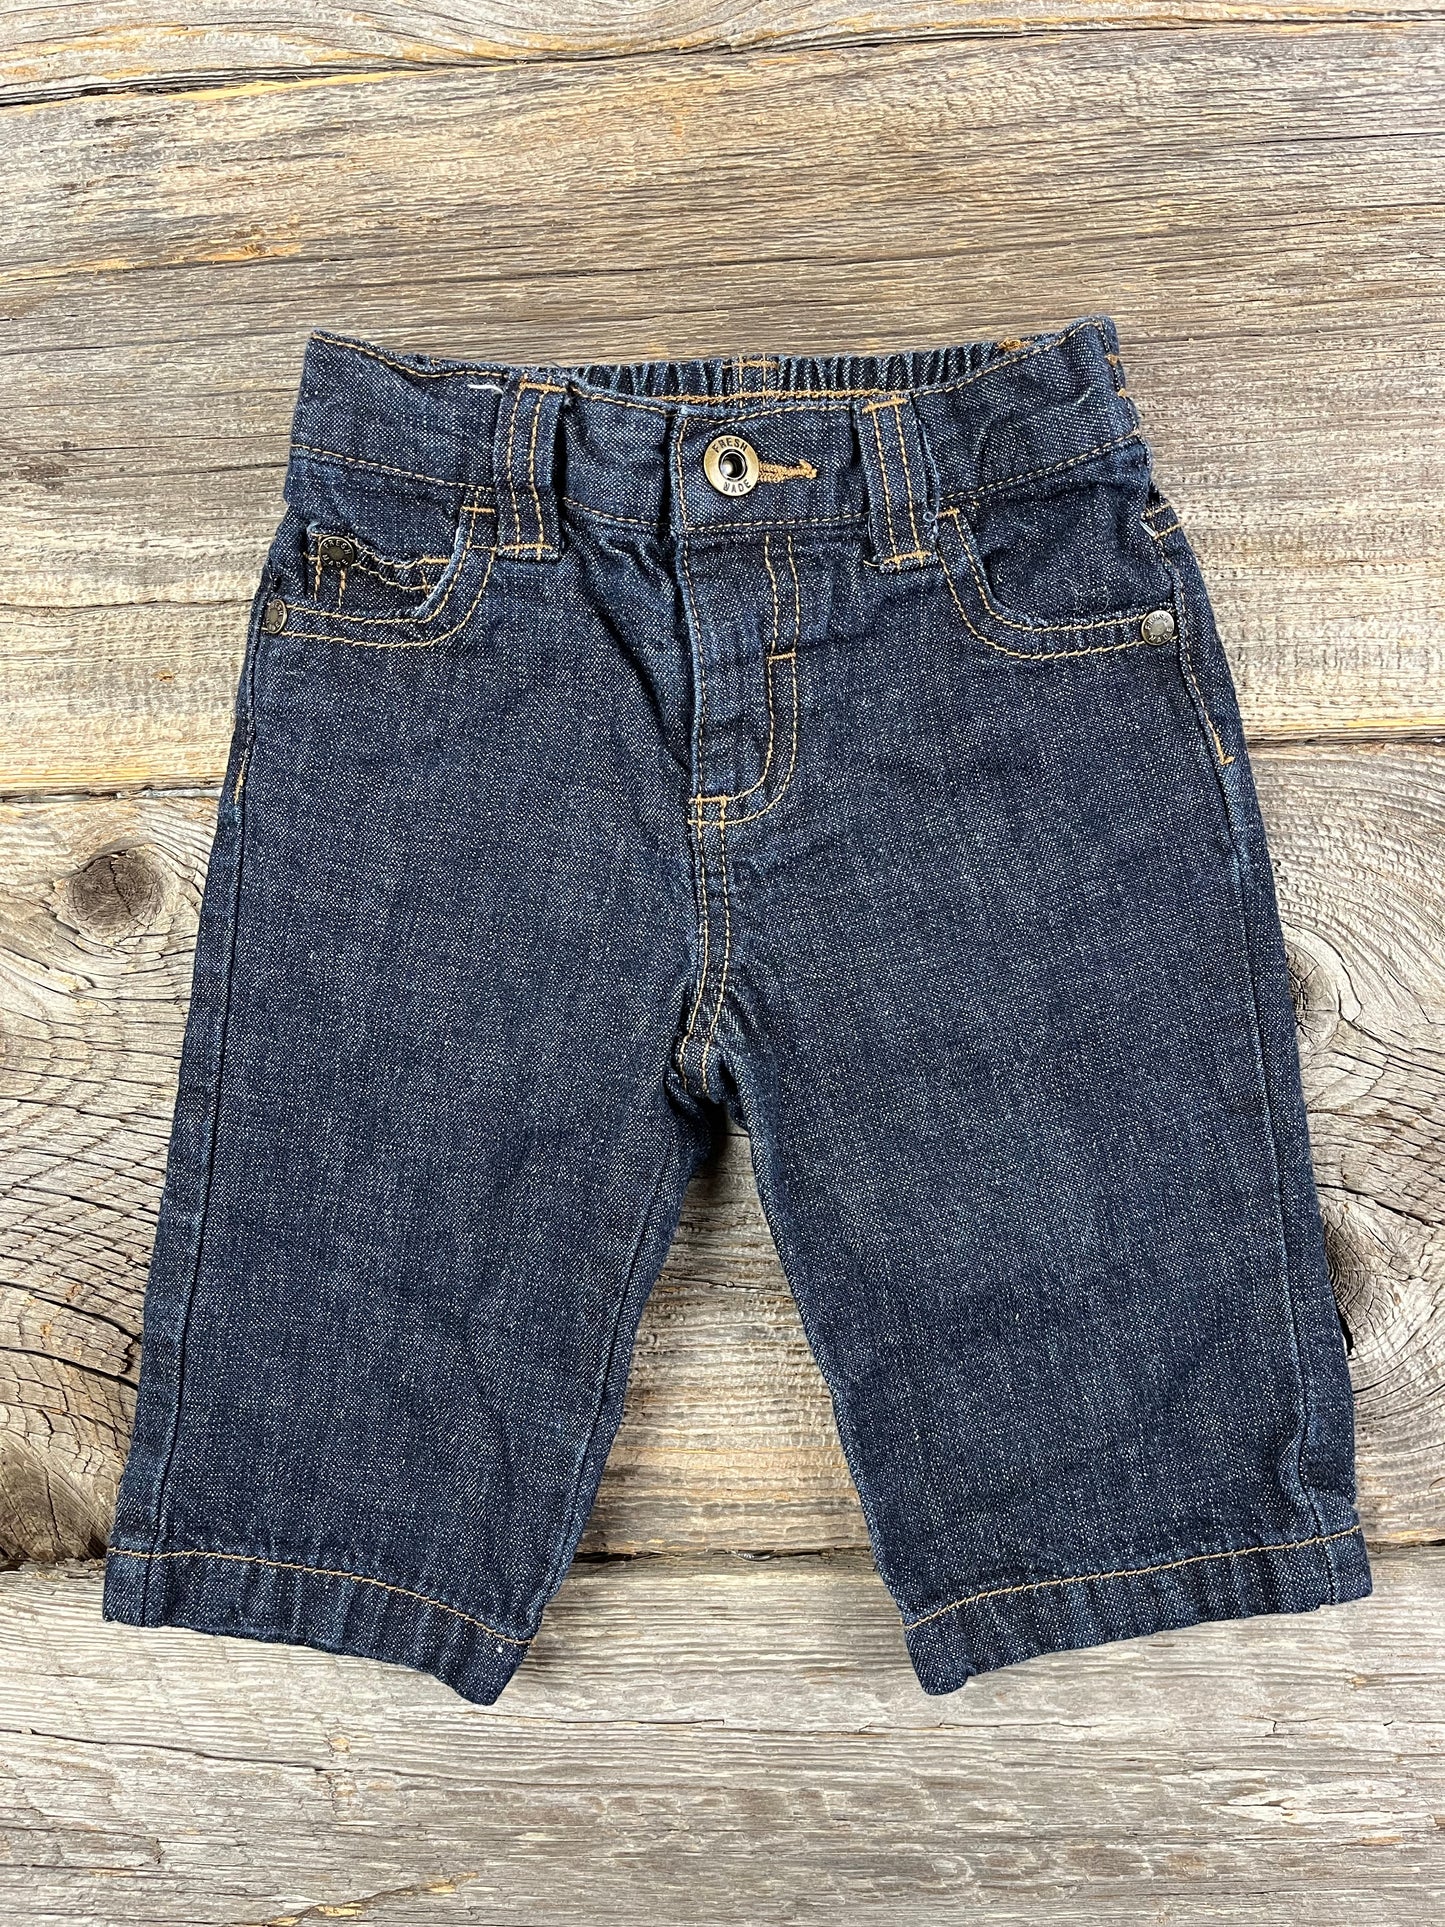 Joe Fresh 3-6M Jeans